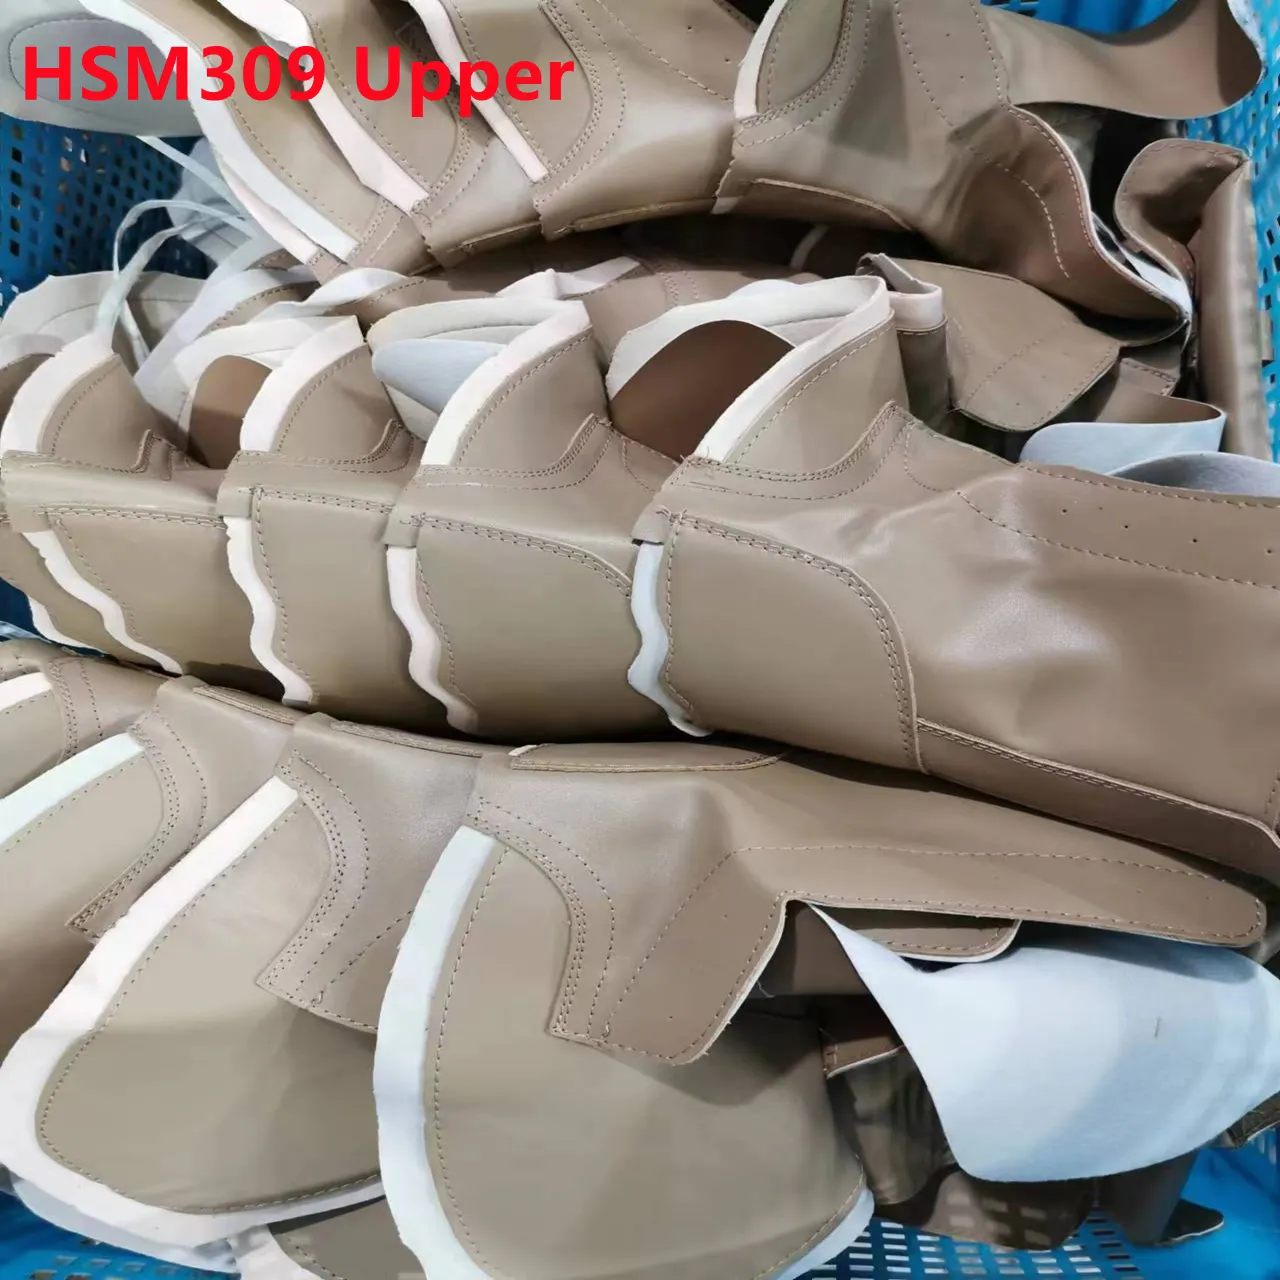 ZH, botas de segurança de couro material superior chinelo semi acabado sapato cabedais sapatos para homens/mulheres botas táticas HSM309 superior